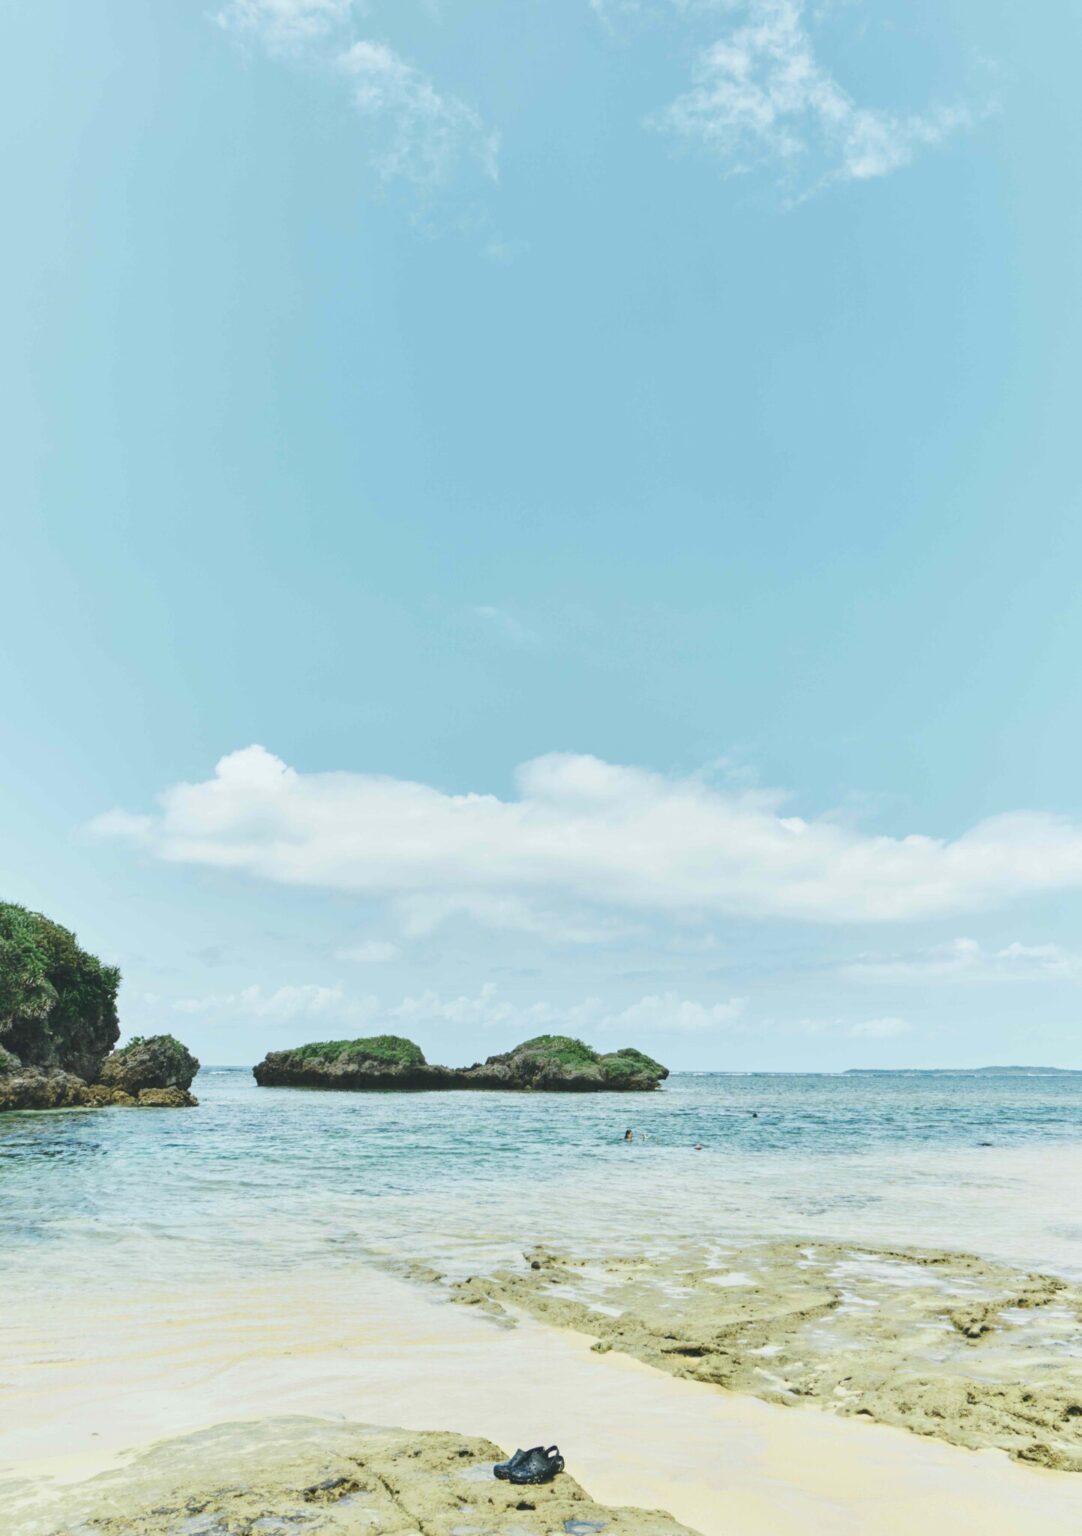 西表島には星形の砂が見られる「星砂の浜」も。シュノーケリングや海水浴を楽しむ観光客も多い。